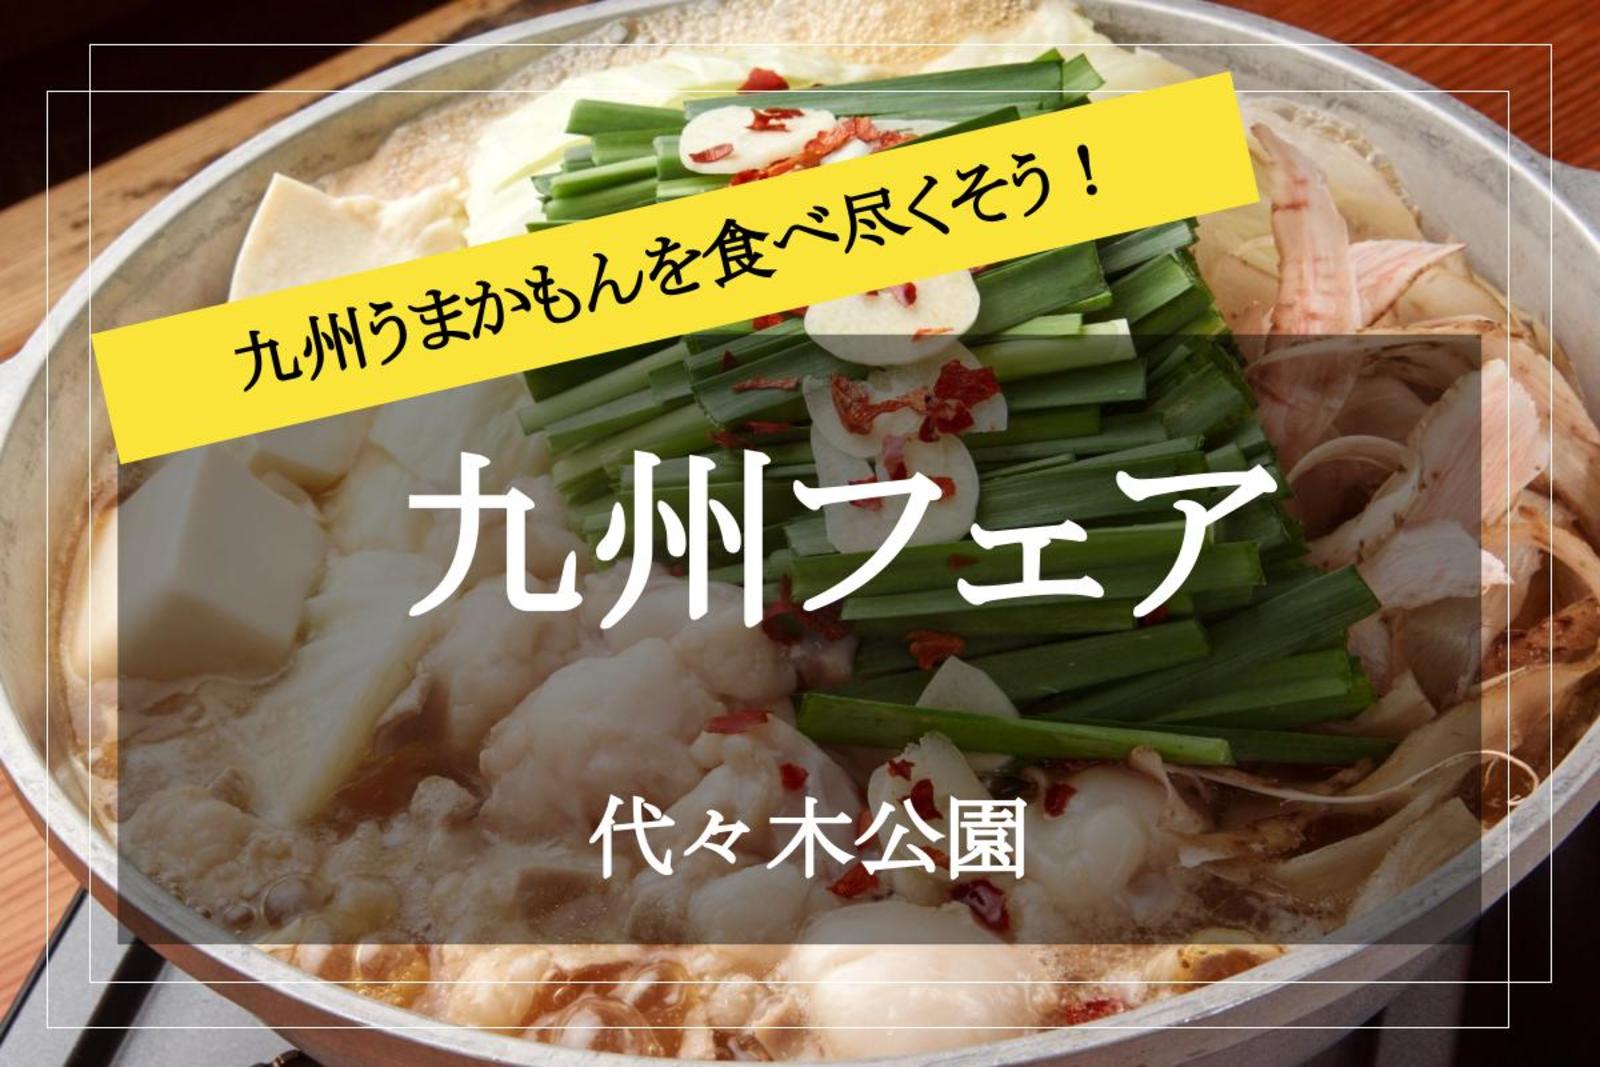 【九州フェアin代々木公園】九州の美味しいものを食べ尽くし、九州丸ごと満喫しましょう！